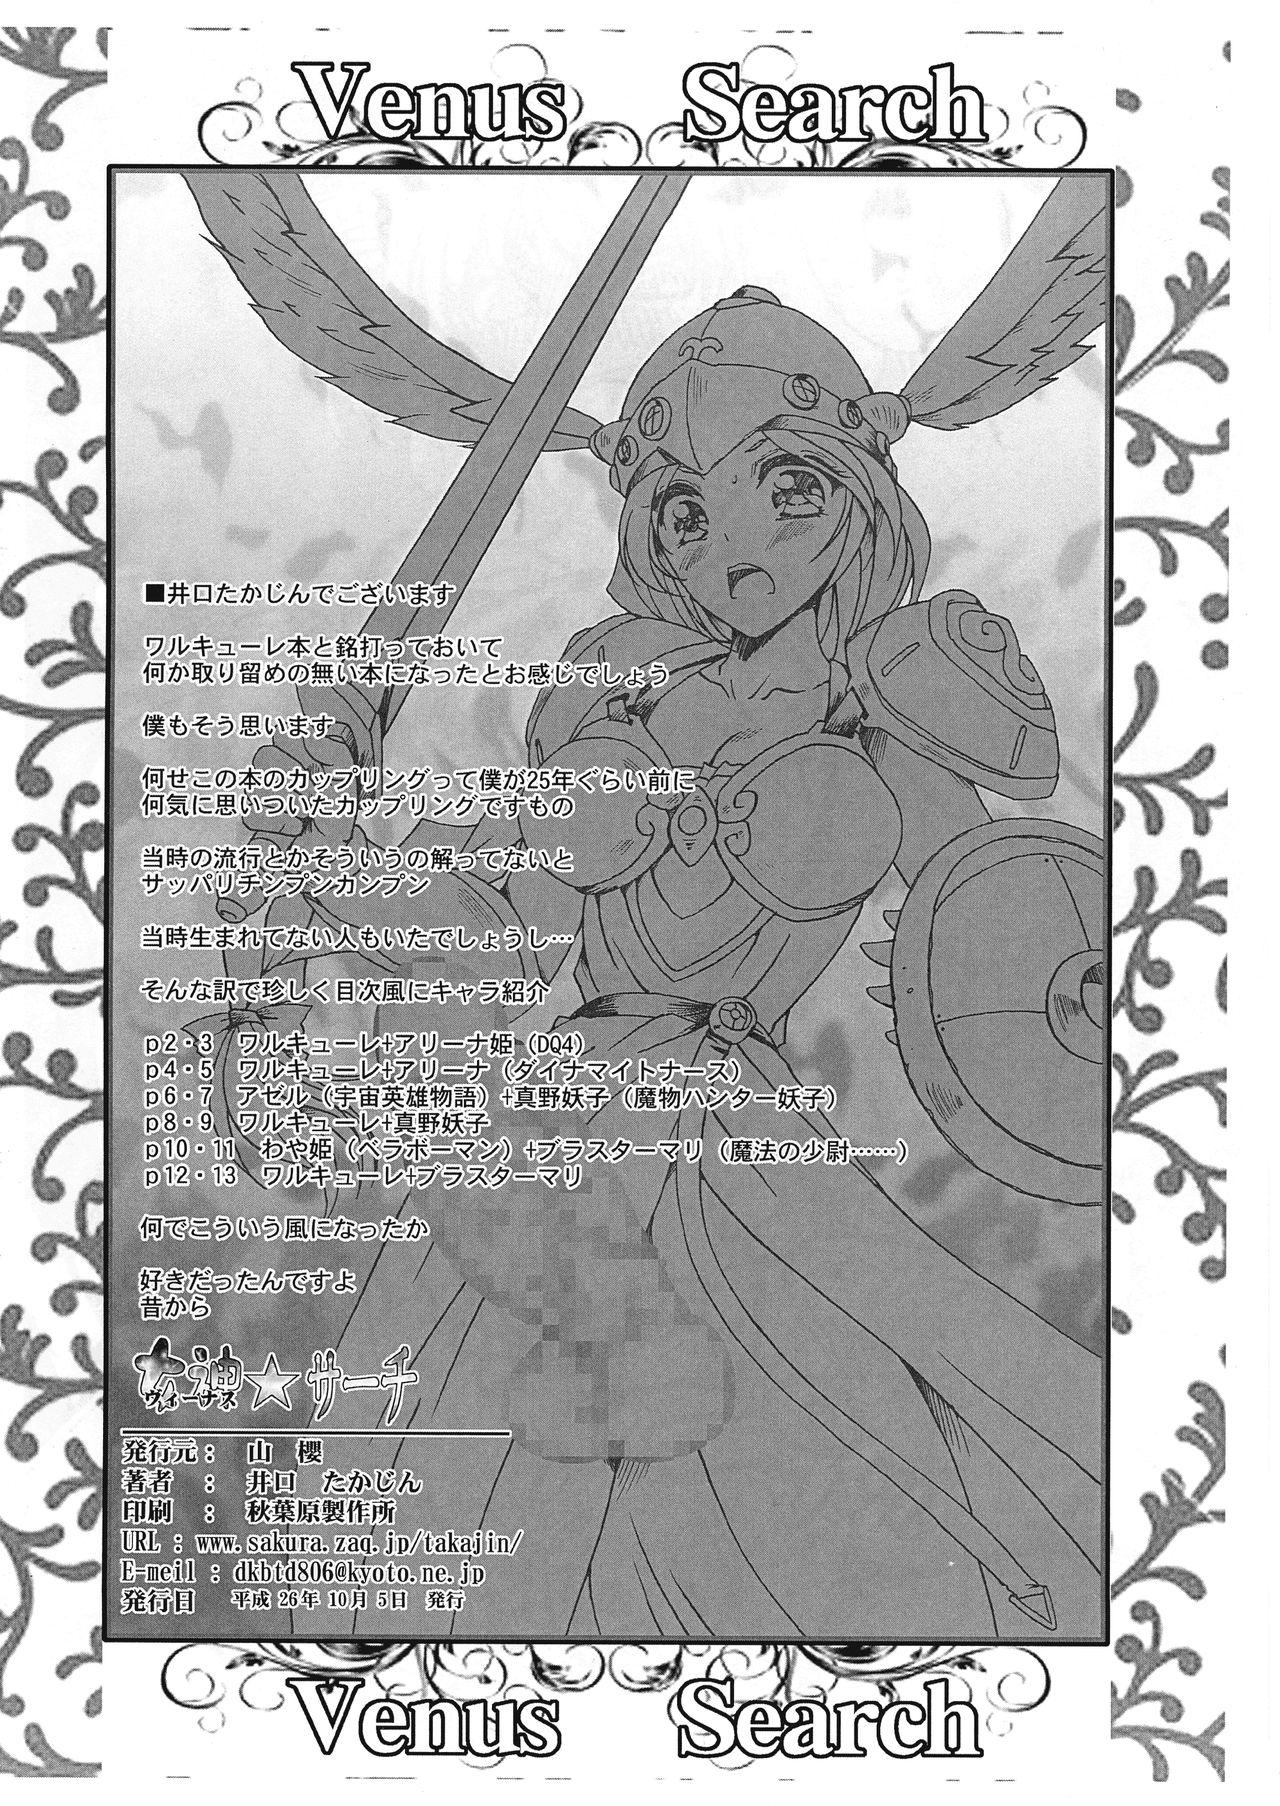 Hardcoresex Megami ☆Search Venus Search Gilf - Page 2